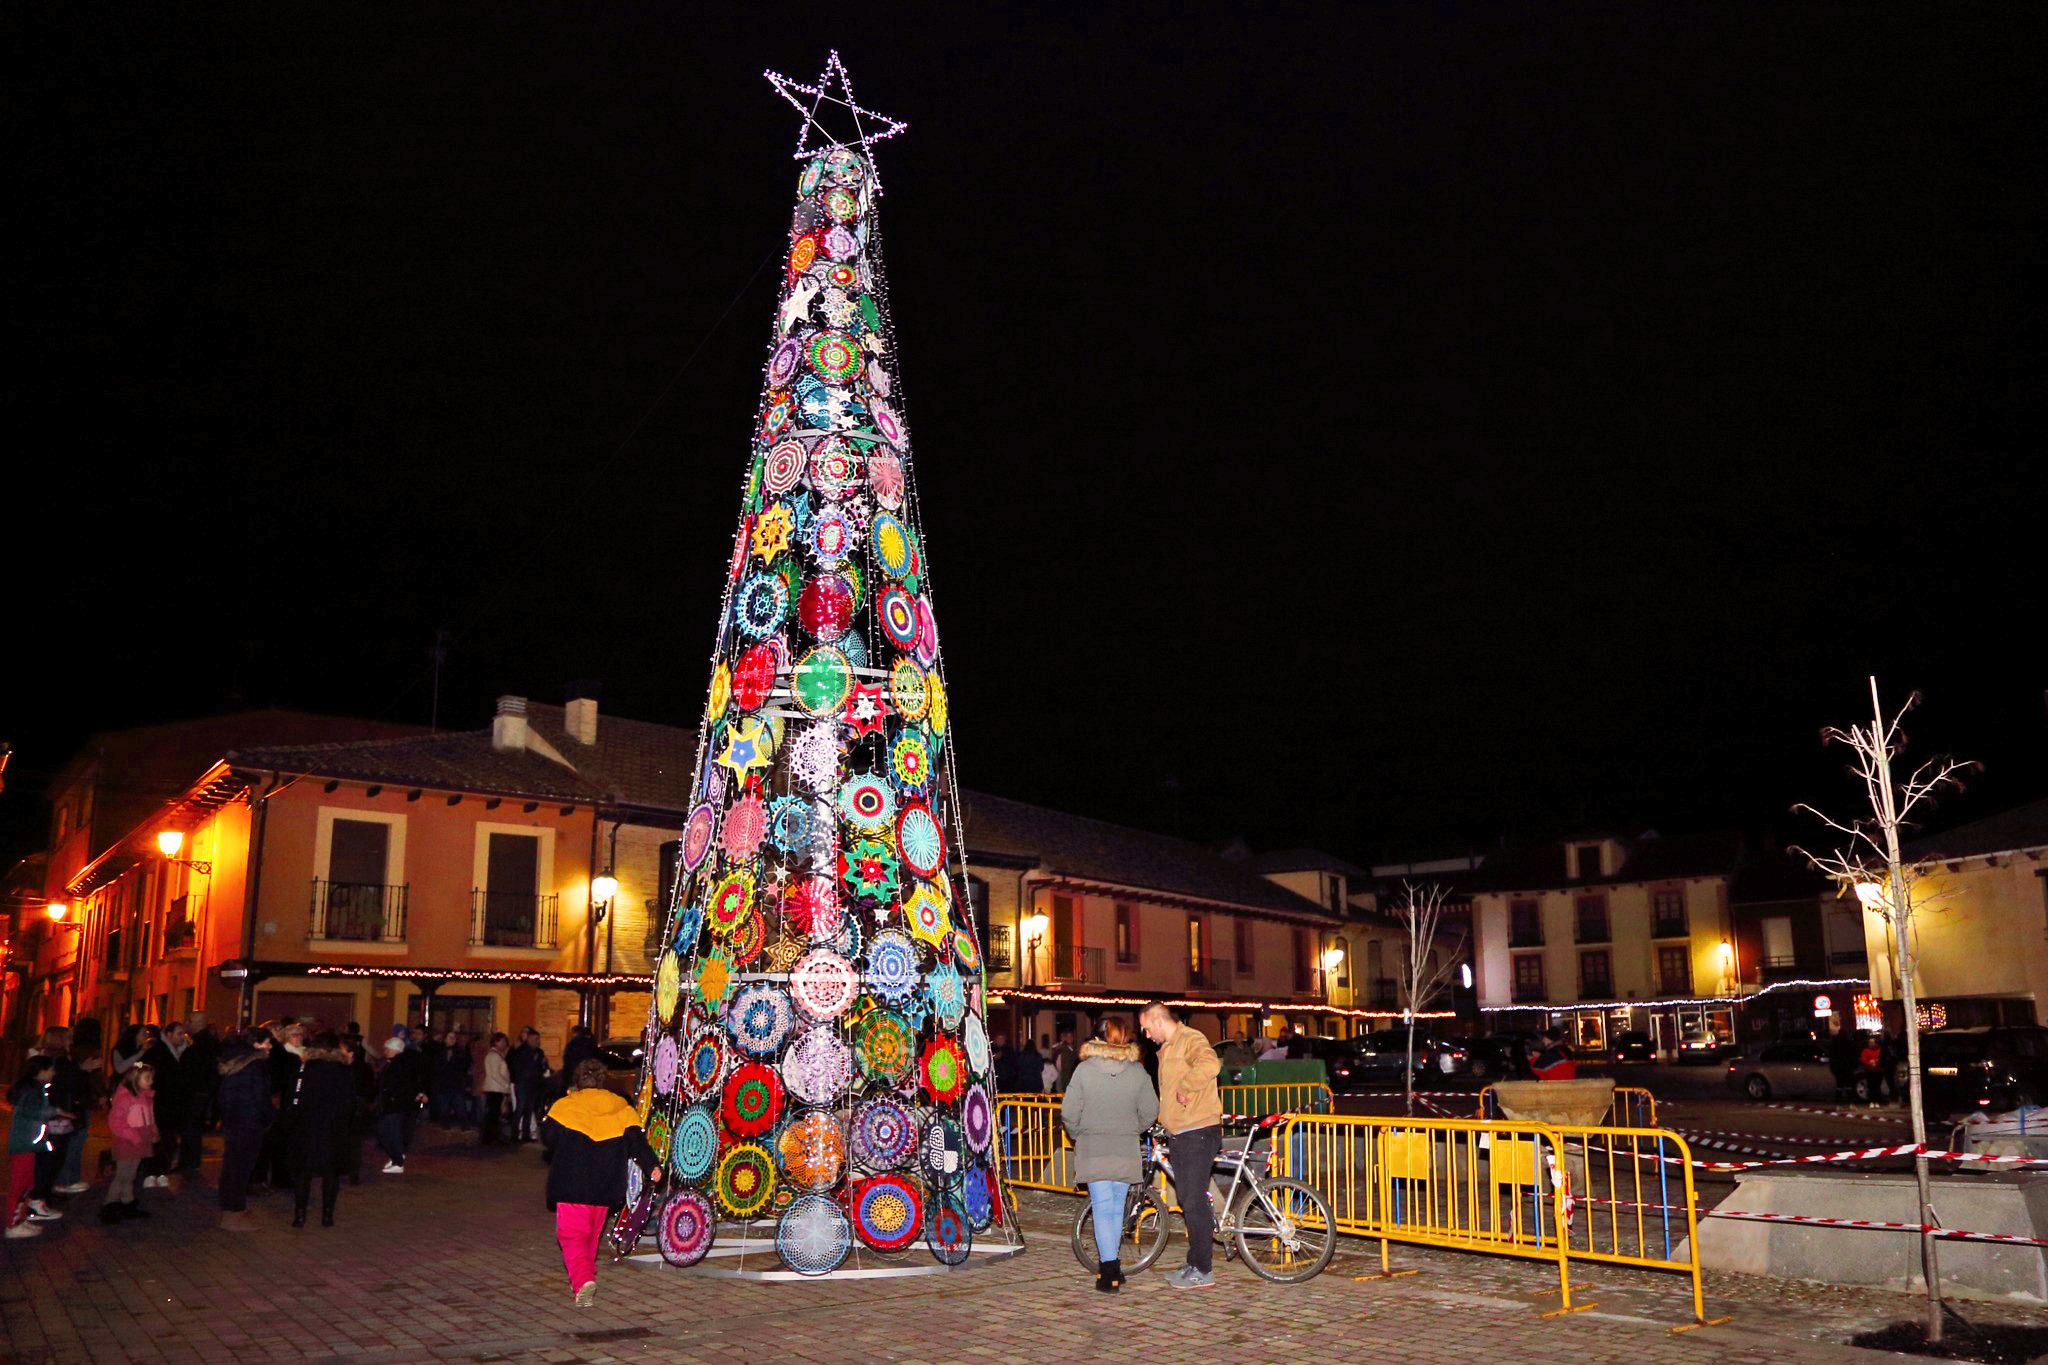 El arbol de ganchillo es el principal atractivo de la decoracion navideña. | ANTONIO GARCÍA CEBALLOS